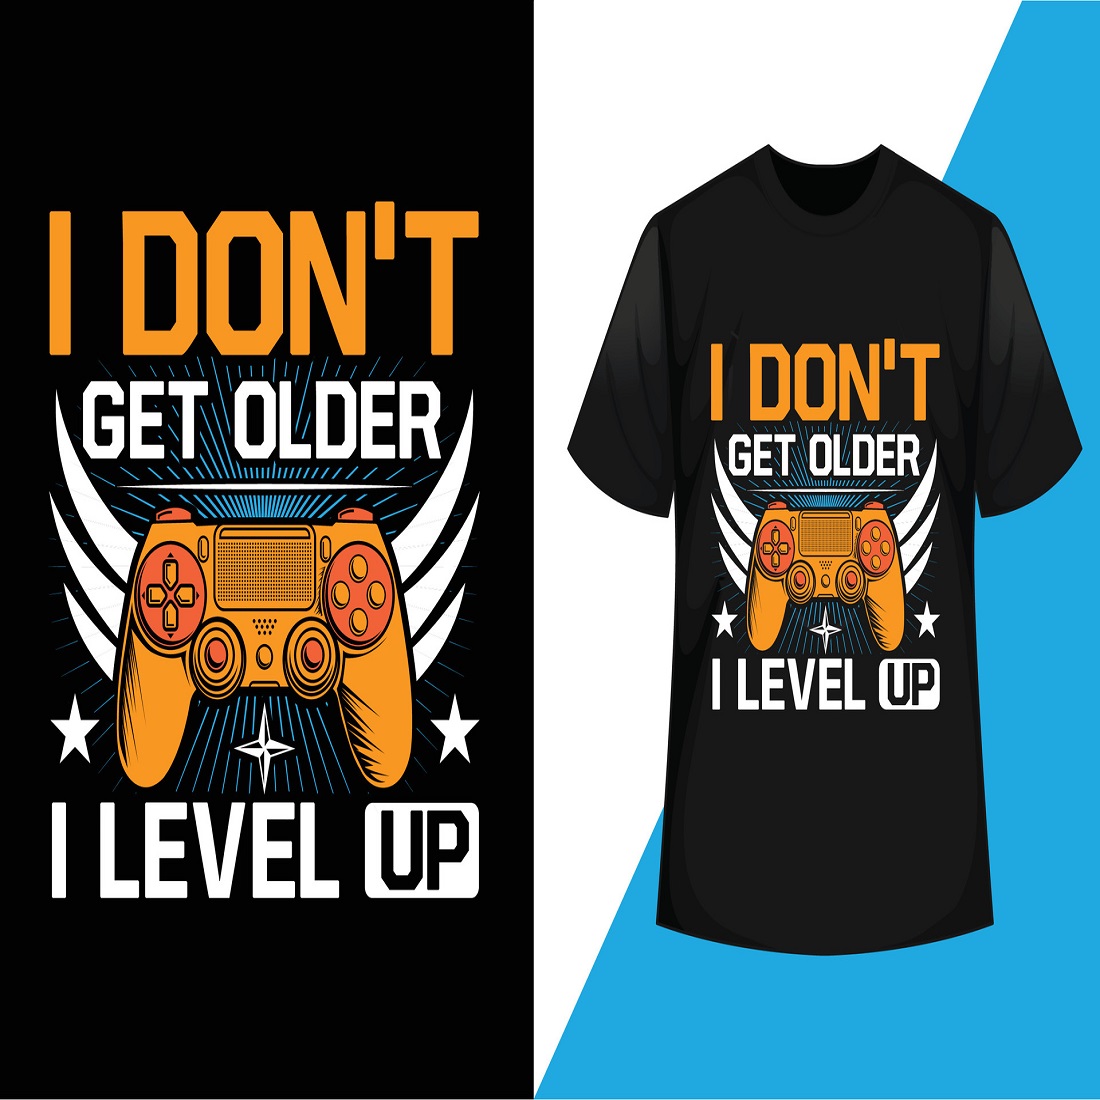 I don't get older i level up gaming t-shirt design vector cover image.